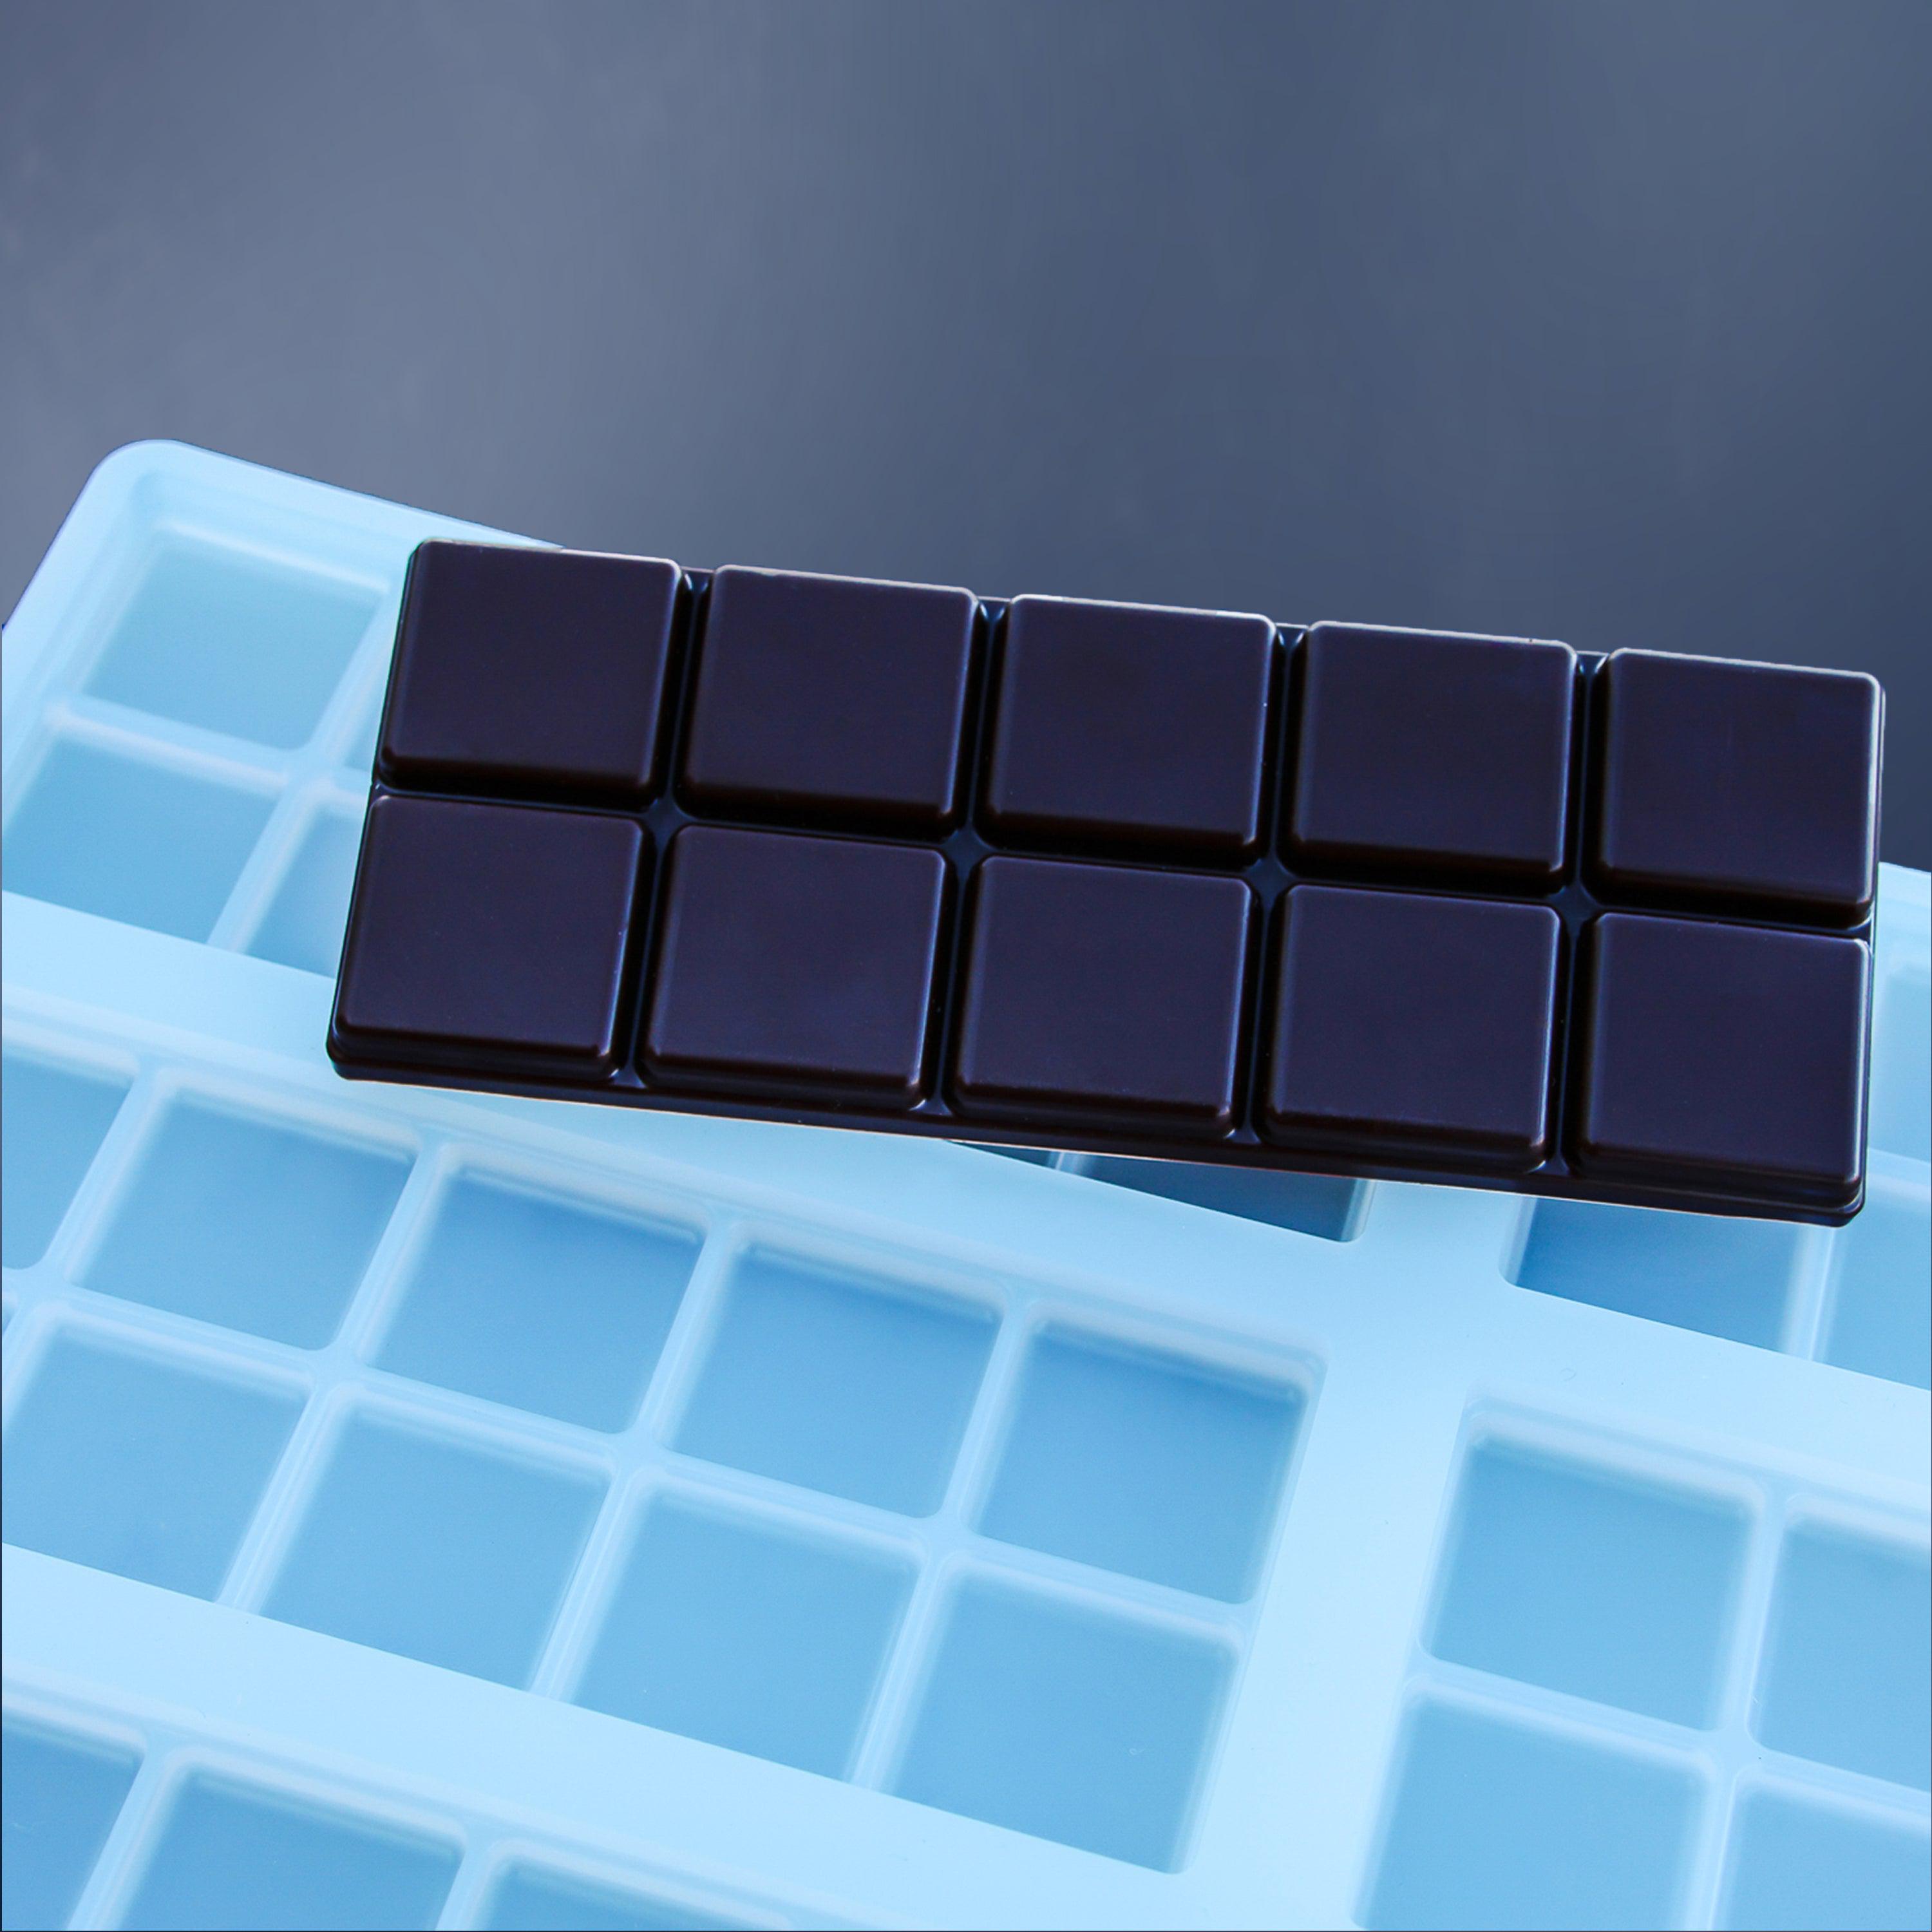 40 mL Chocolate Bar Mold - Quarter Sheet Mold - 6 Chocolate Bar Cavities